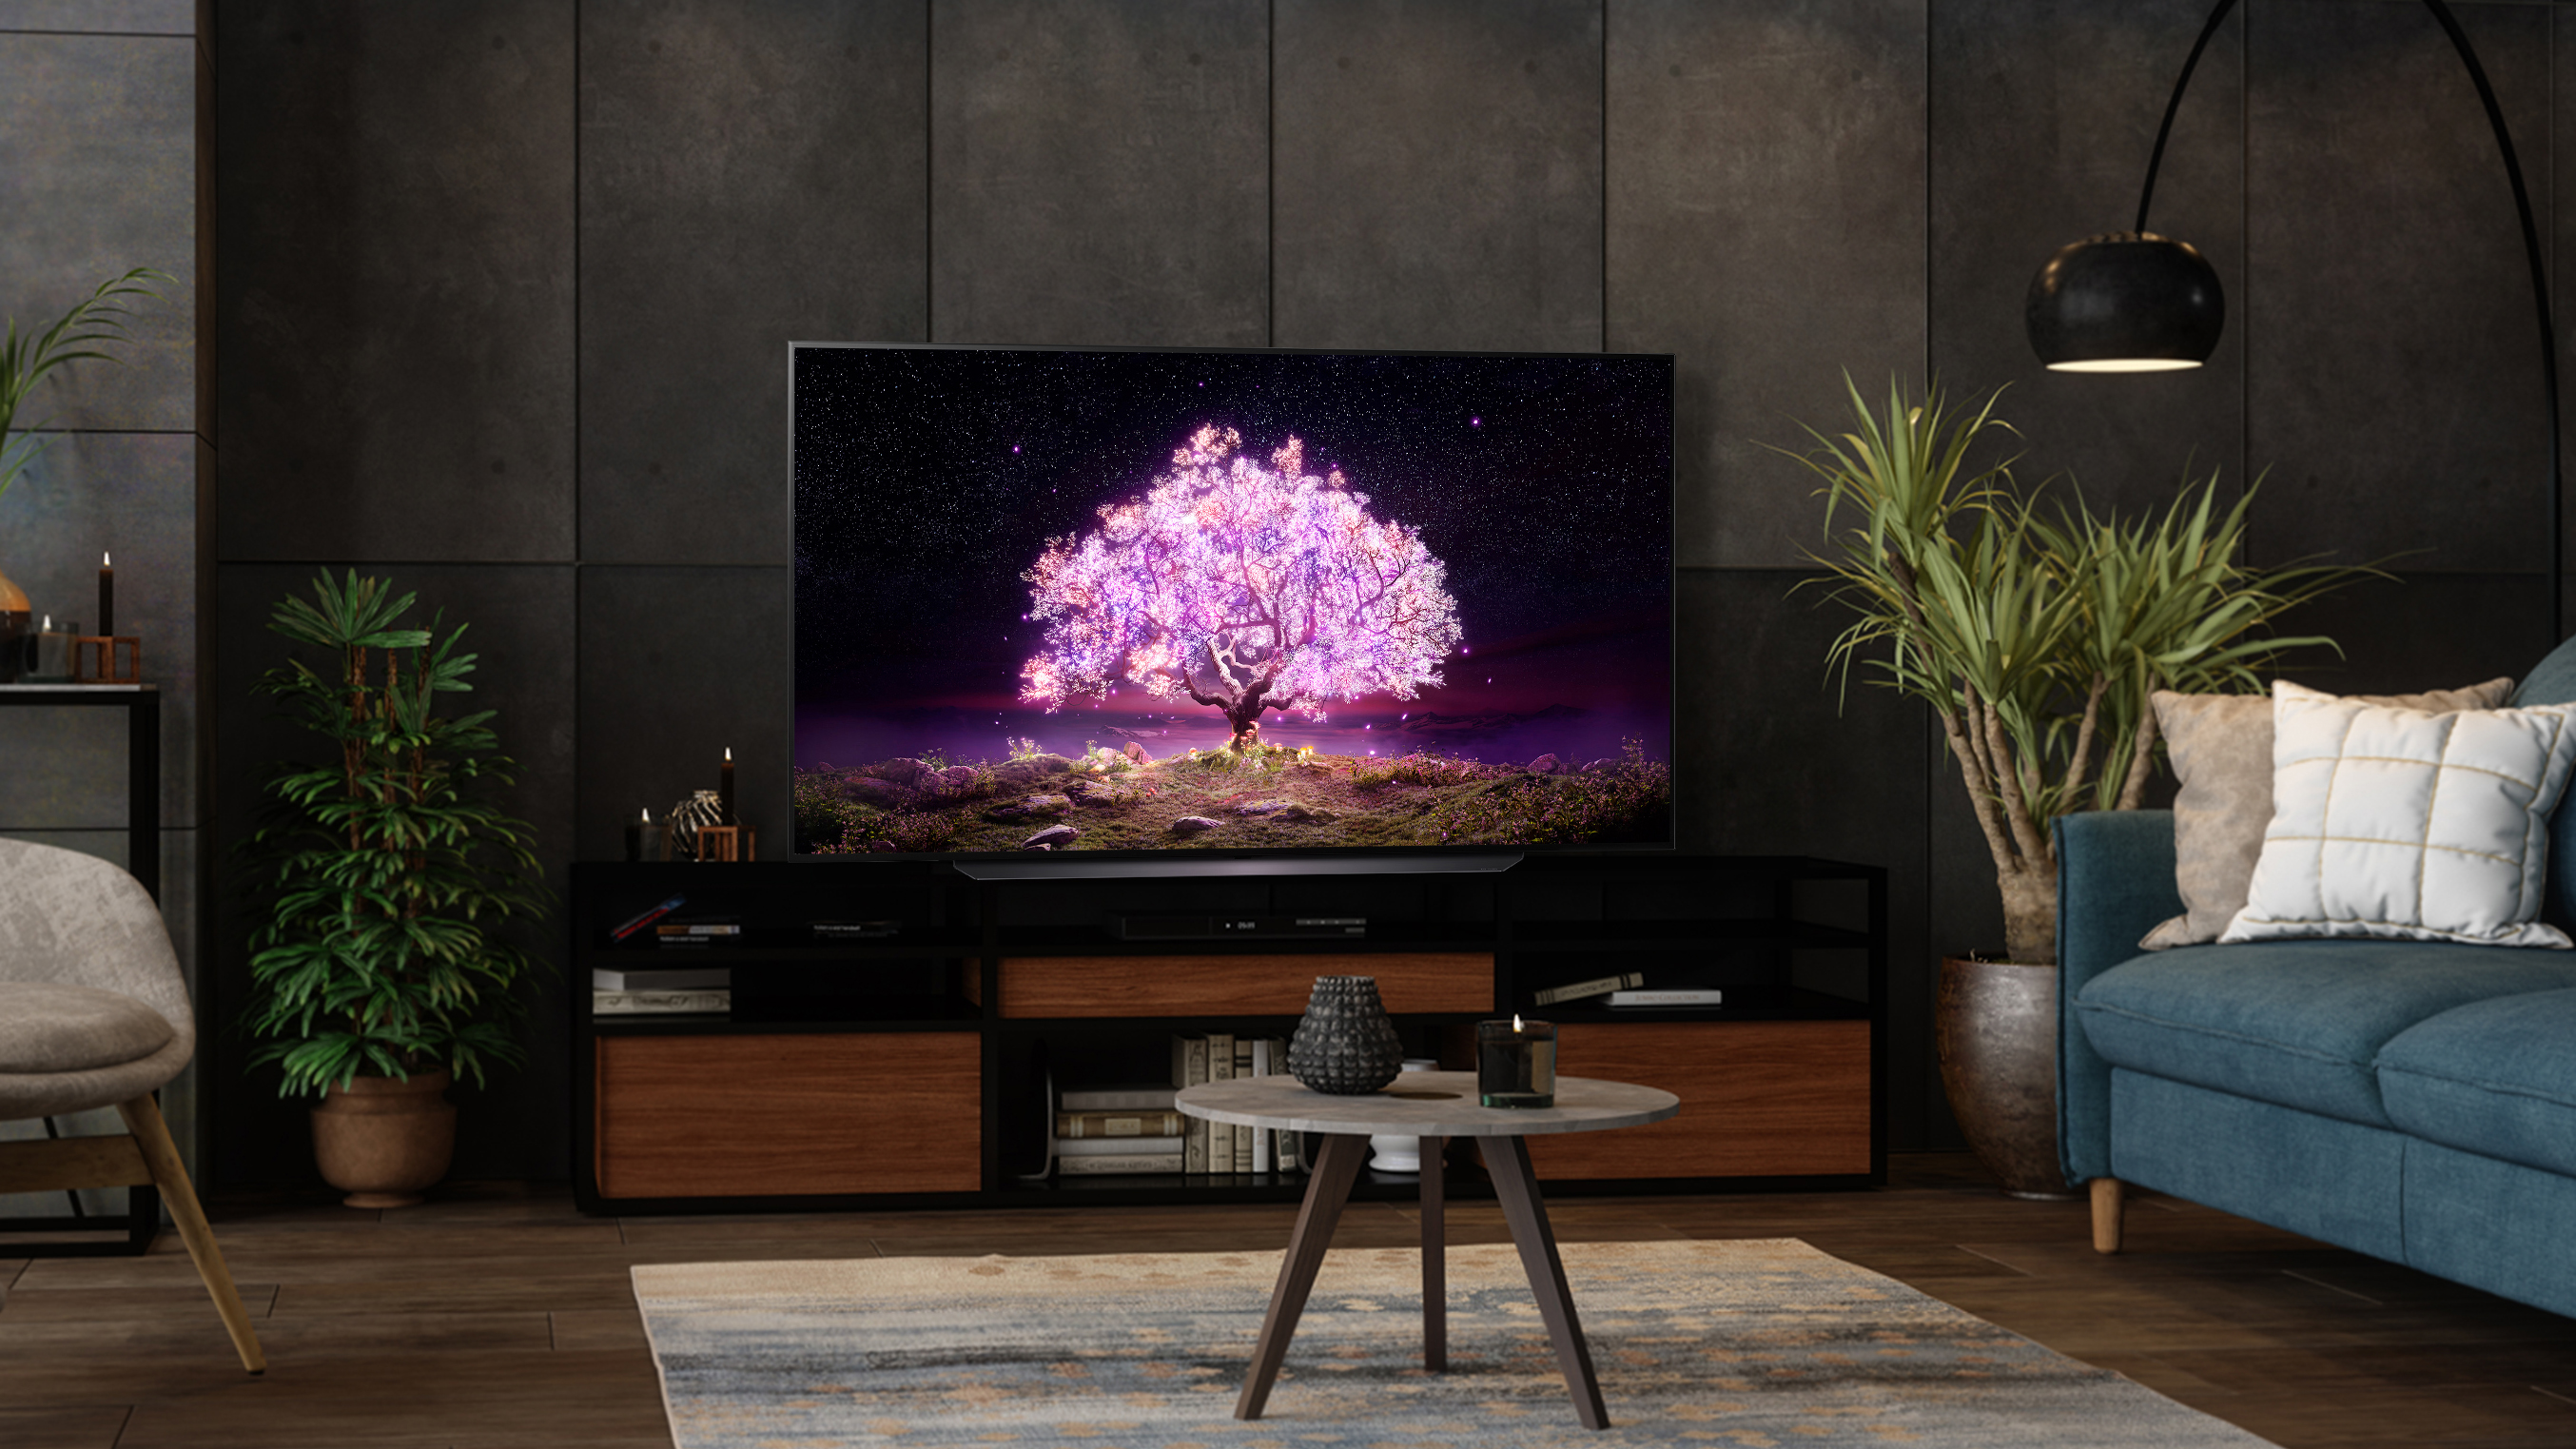 Der LG C1 OLED-Fernseher in einem Wohnzimmer mit einem violetten Baum.